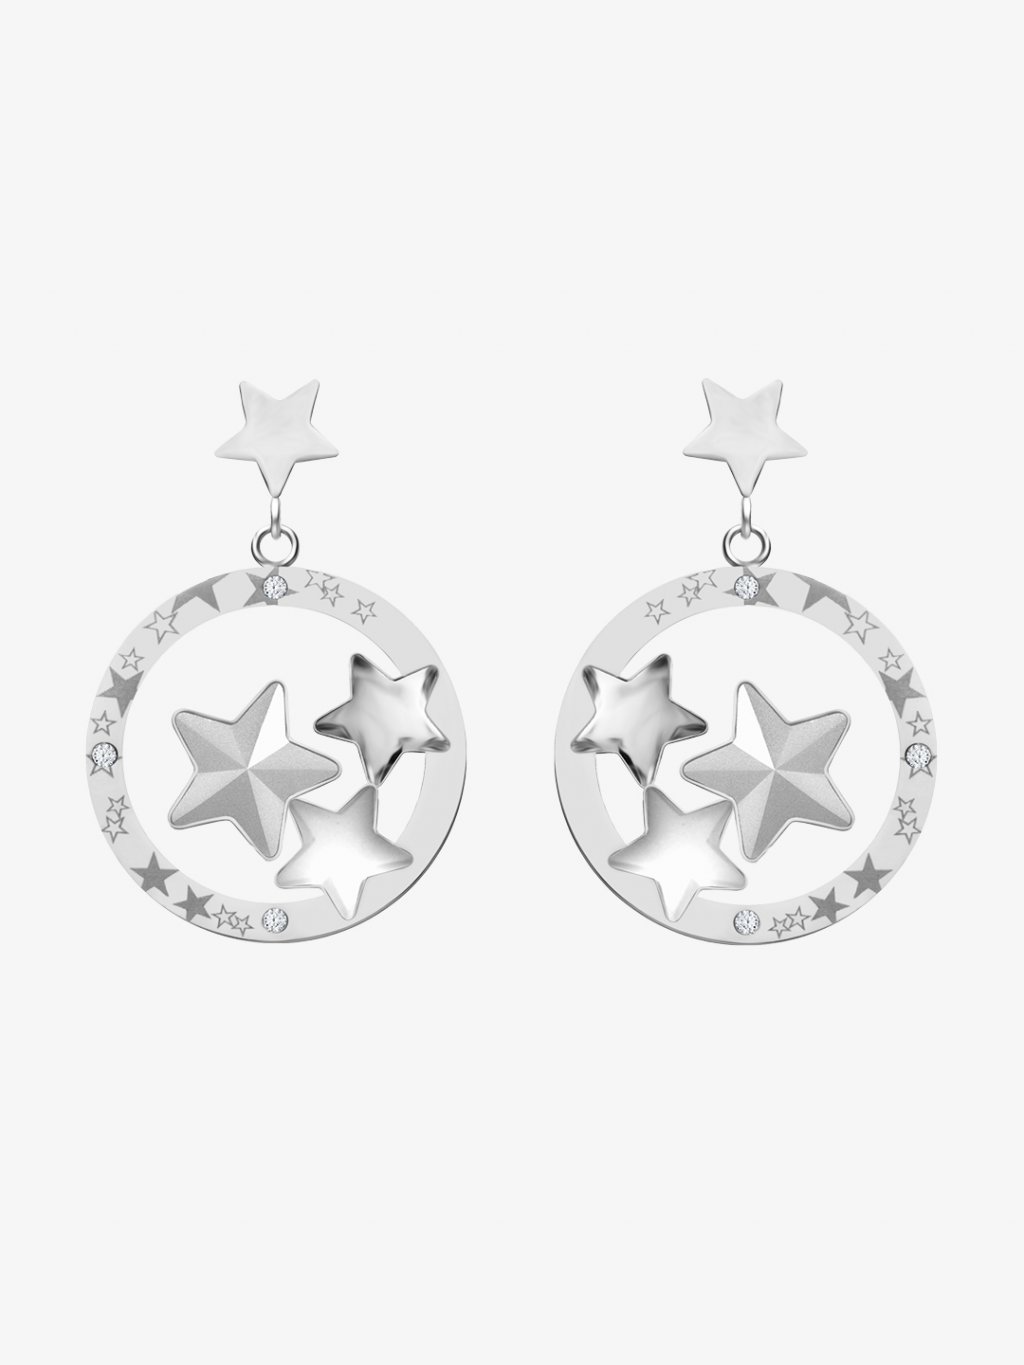 Náušnice z chirurgické oceli Virgo, hvězdy s českým křišťálem Preciosa, krystal